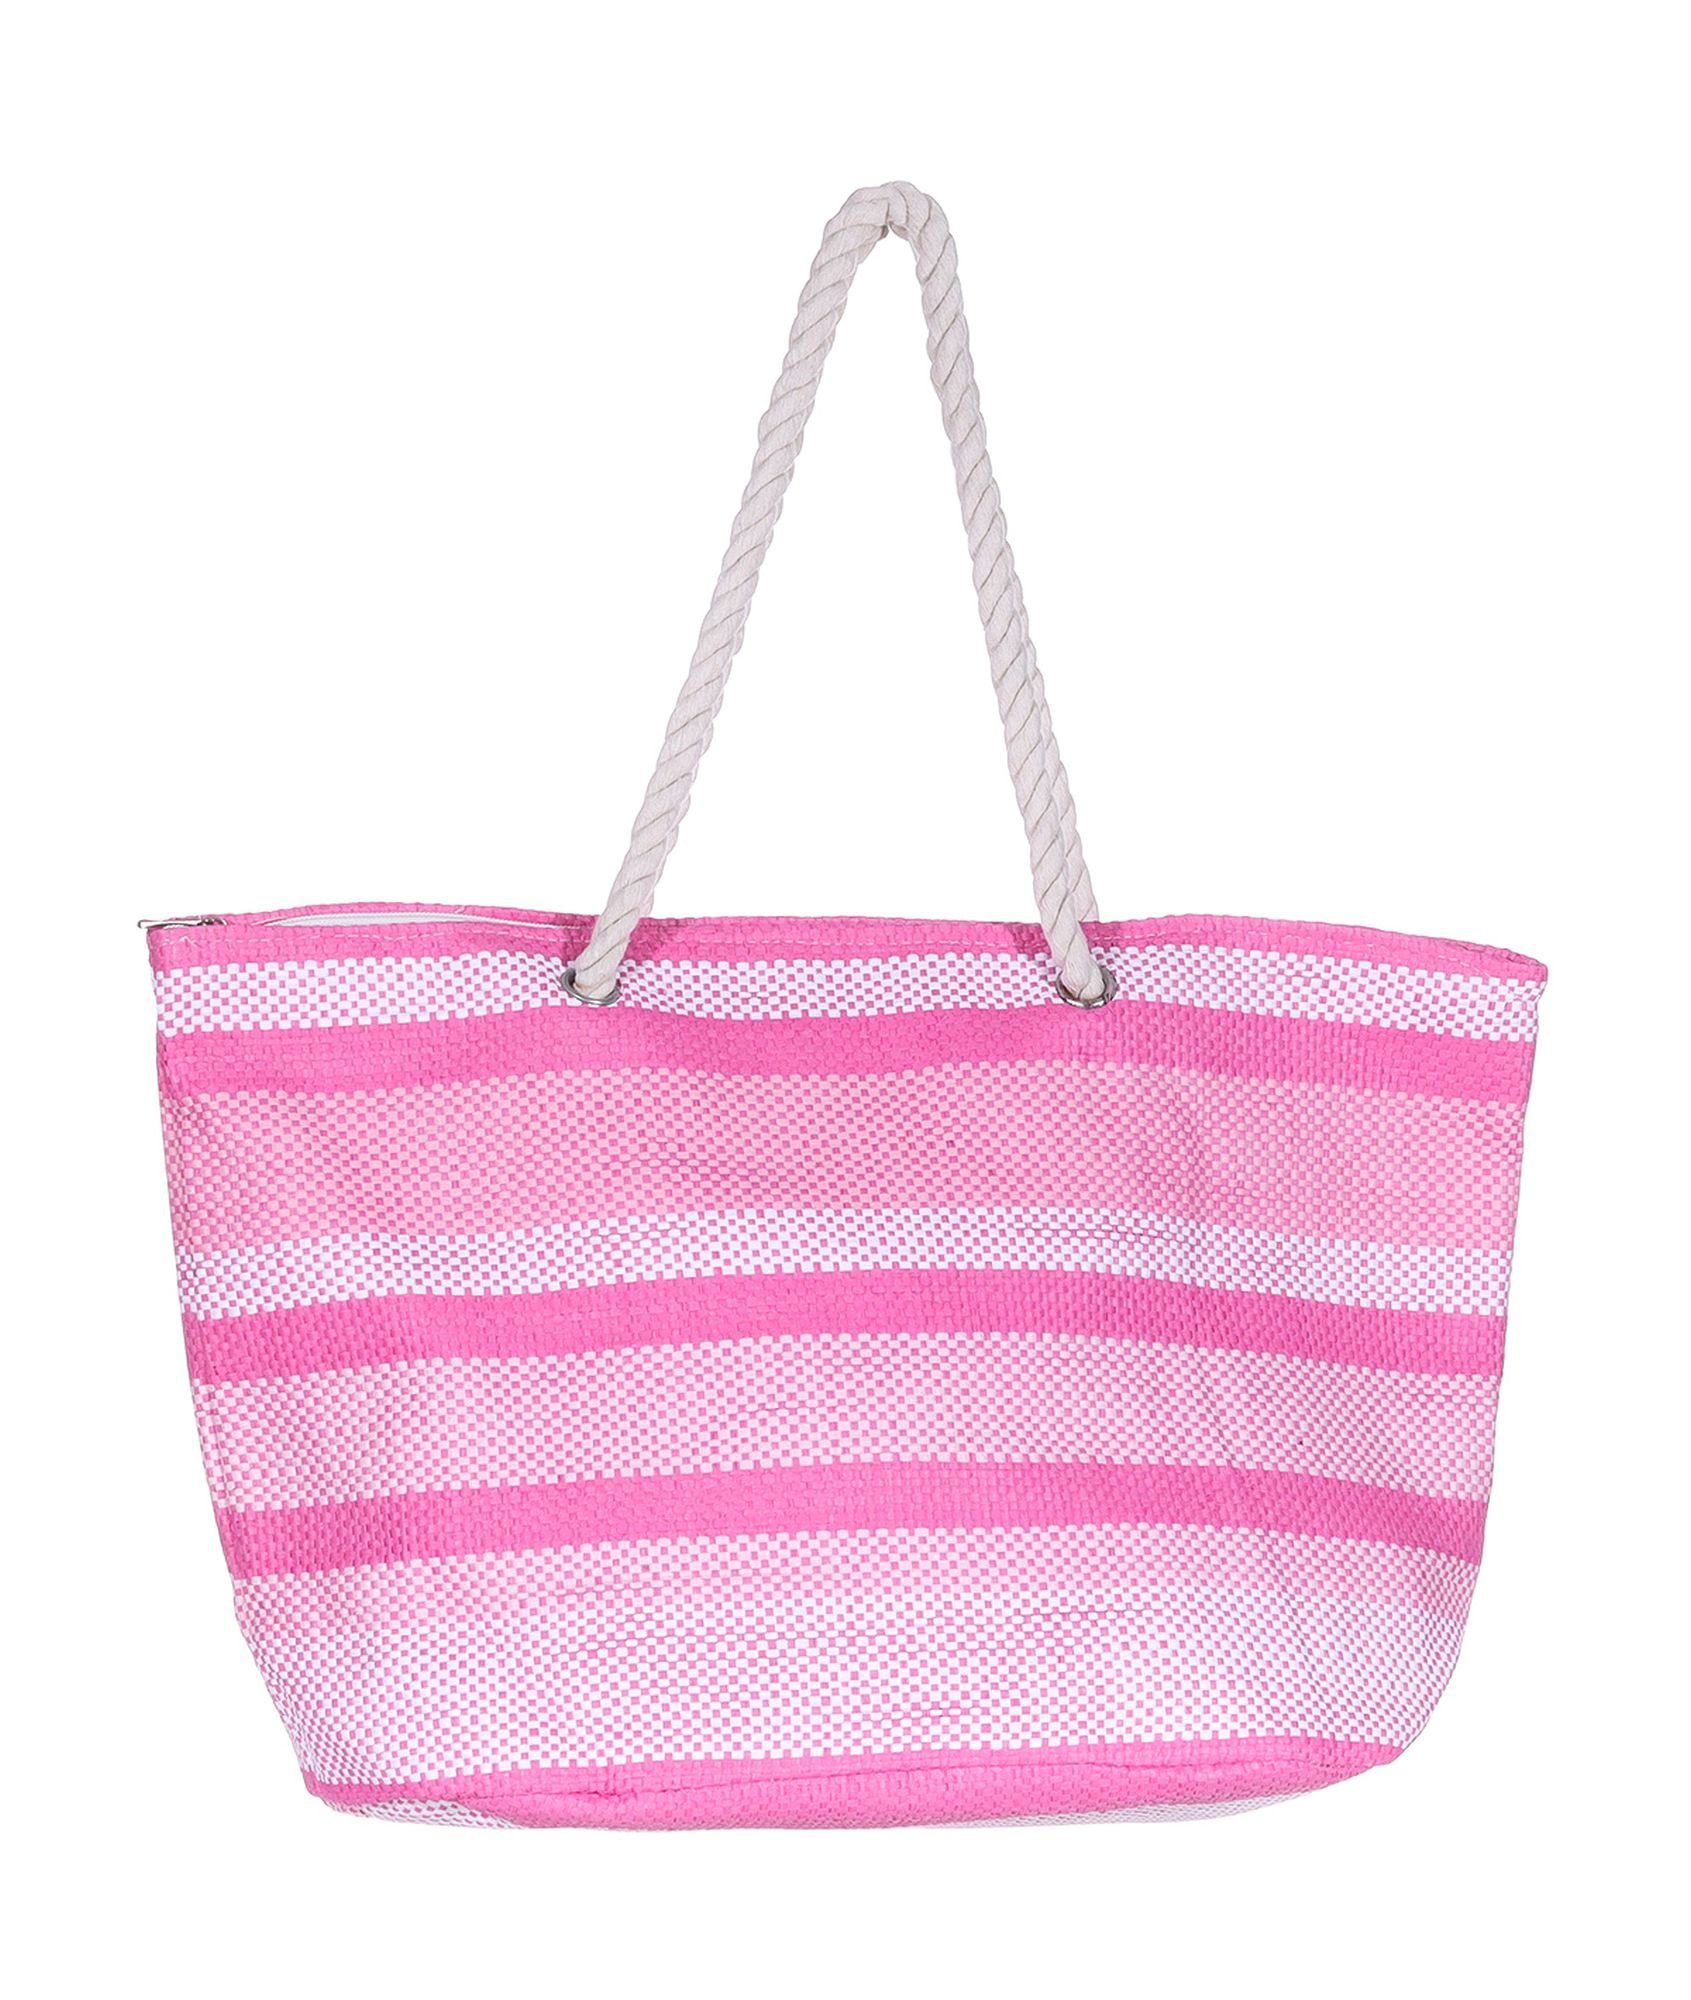 Markenwarenshop-Style Tasche Silkroda Badetasche Weiß Shopper - Strandtasche gestreift Rosa Pink